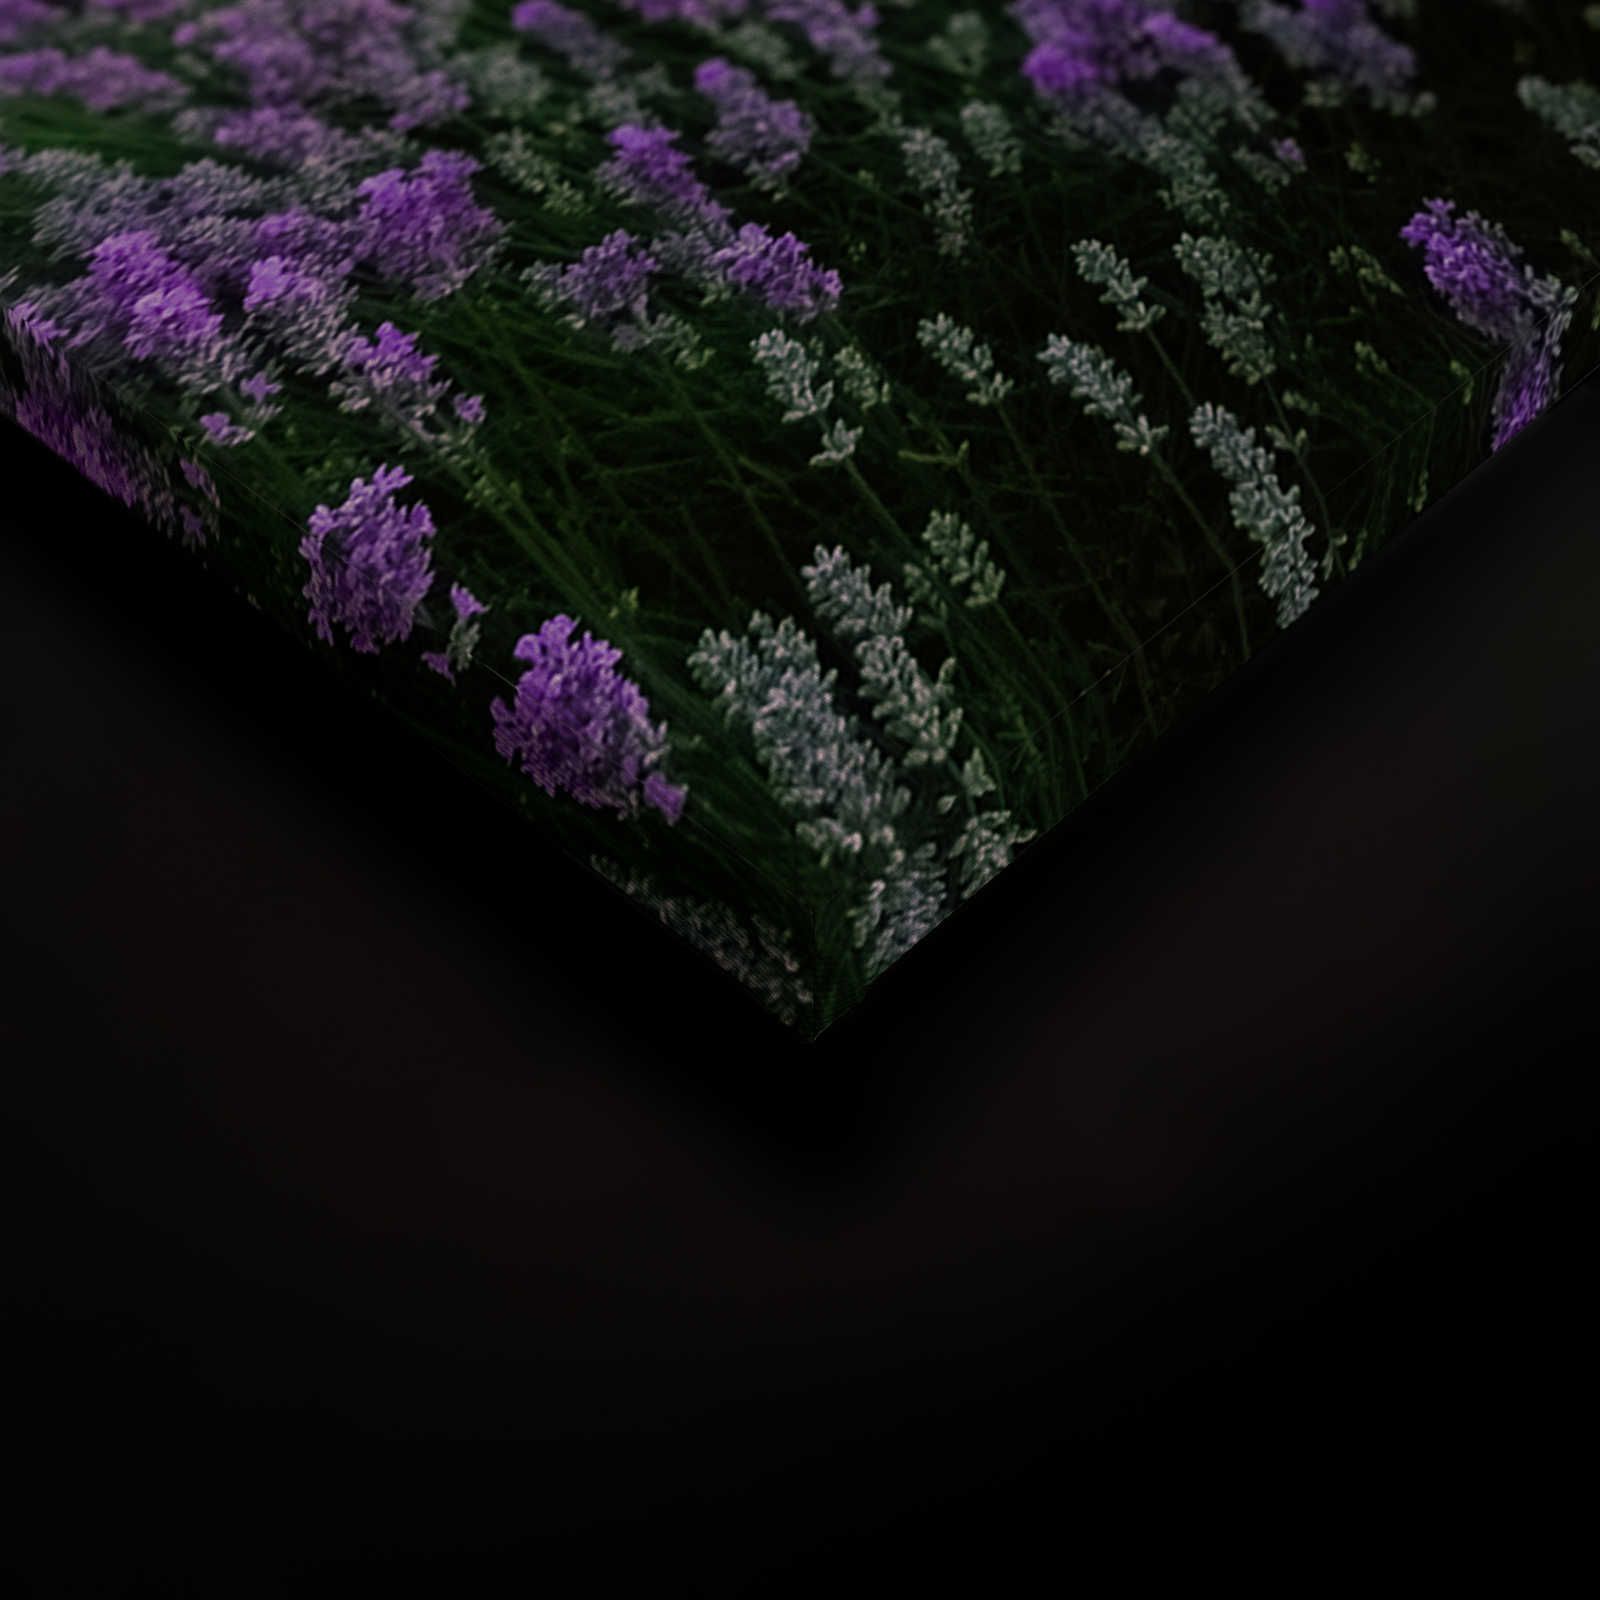             Landschap Canvas Foto met Lavendelveld - 1,20 m x 0,80 m
        